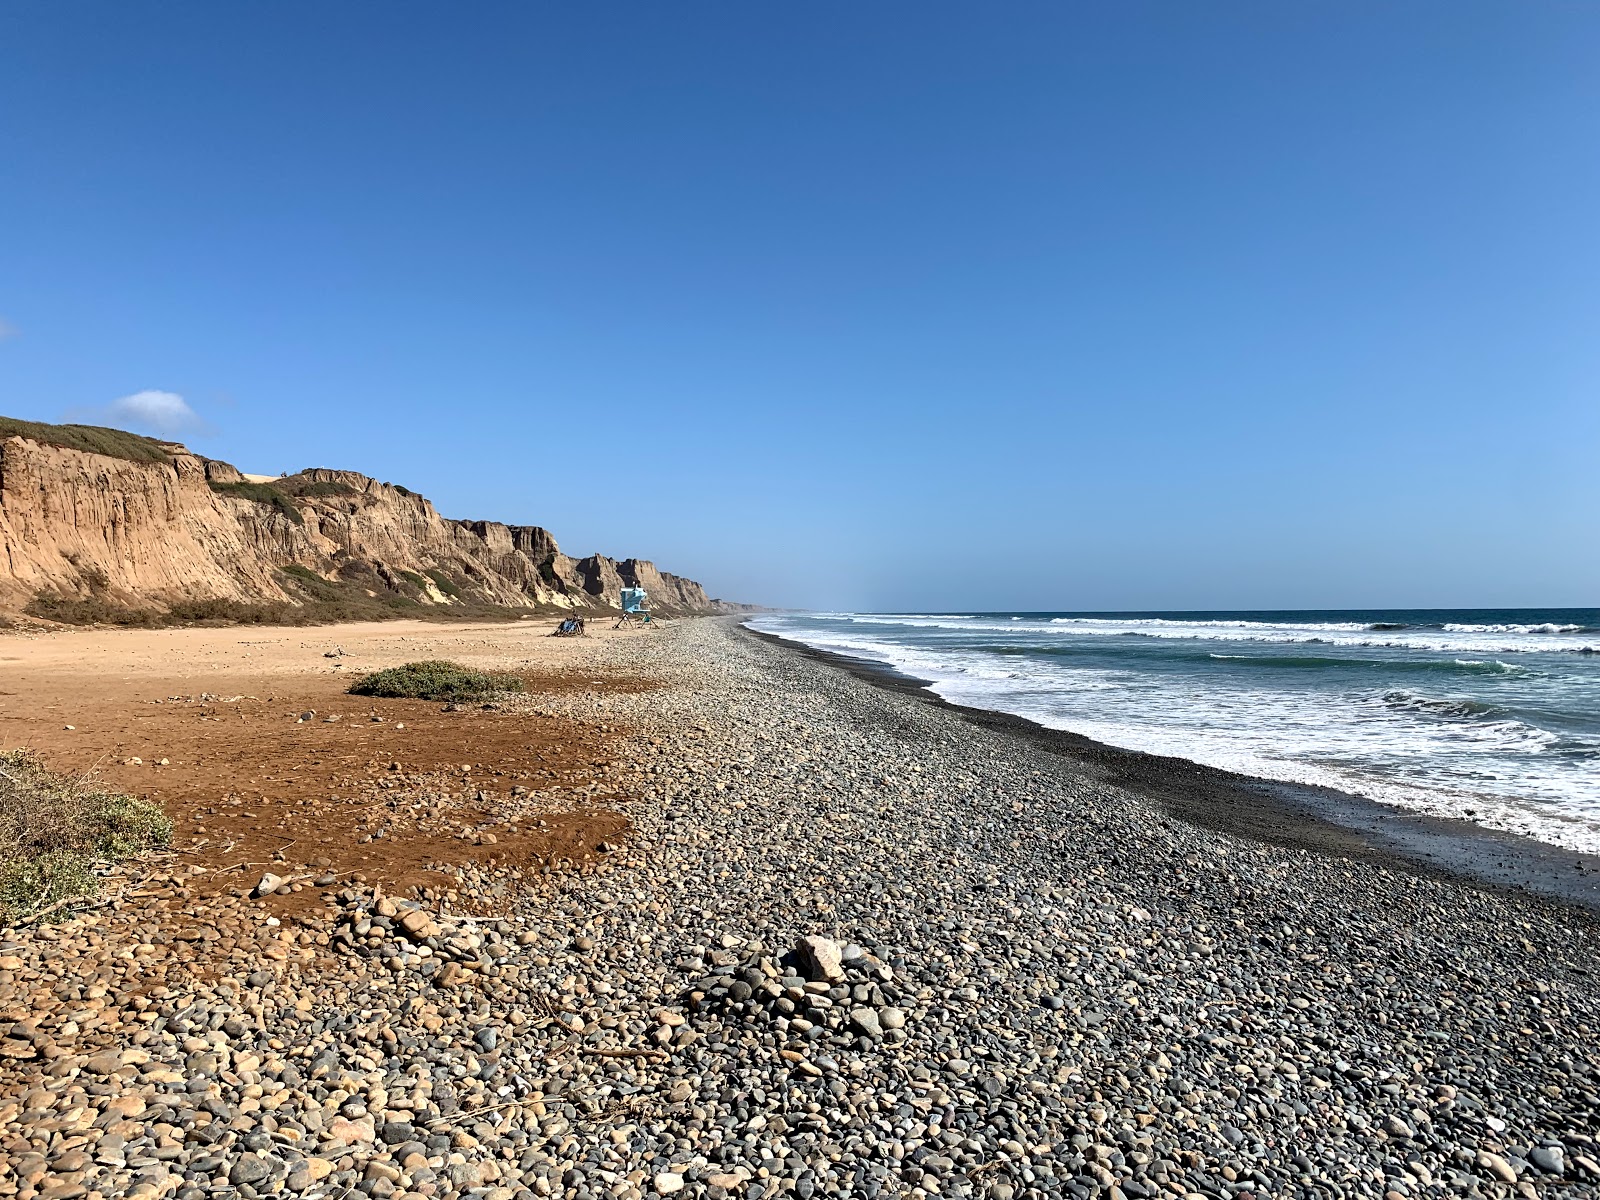 Foto von Gladiator beach mit heller sand&kies Oberfläche